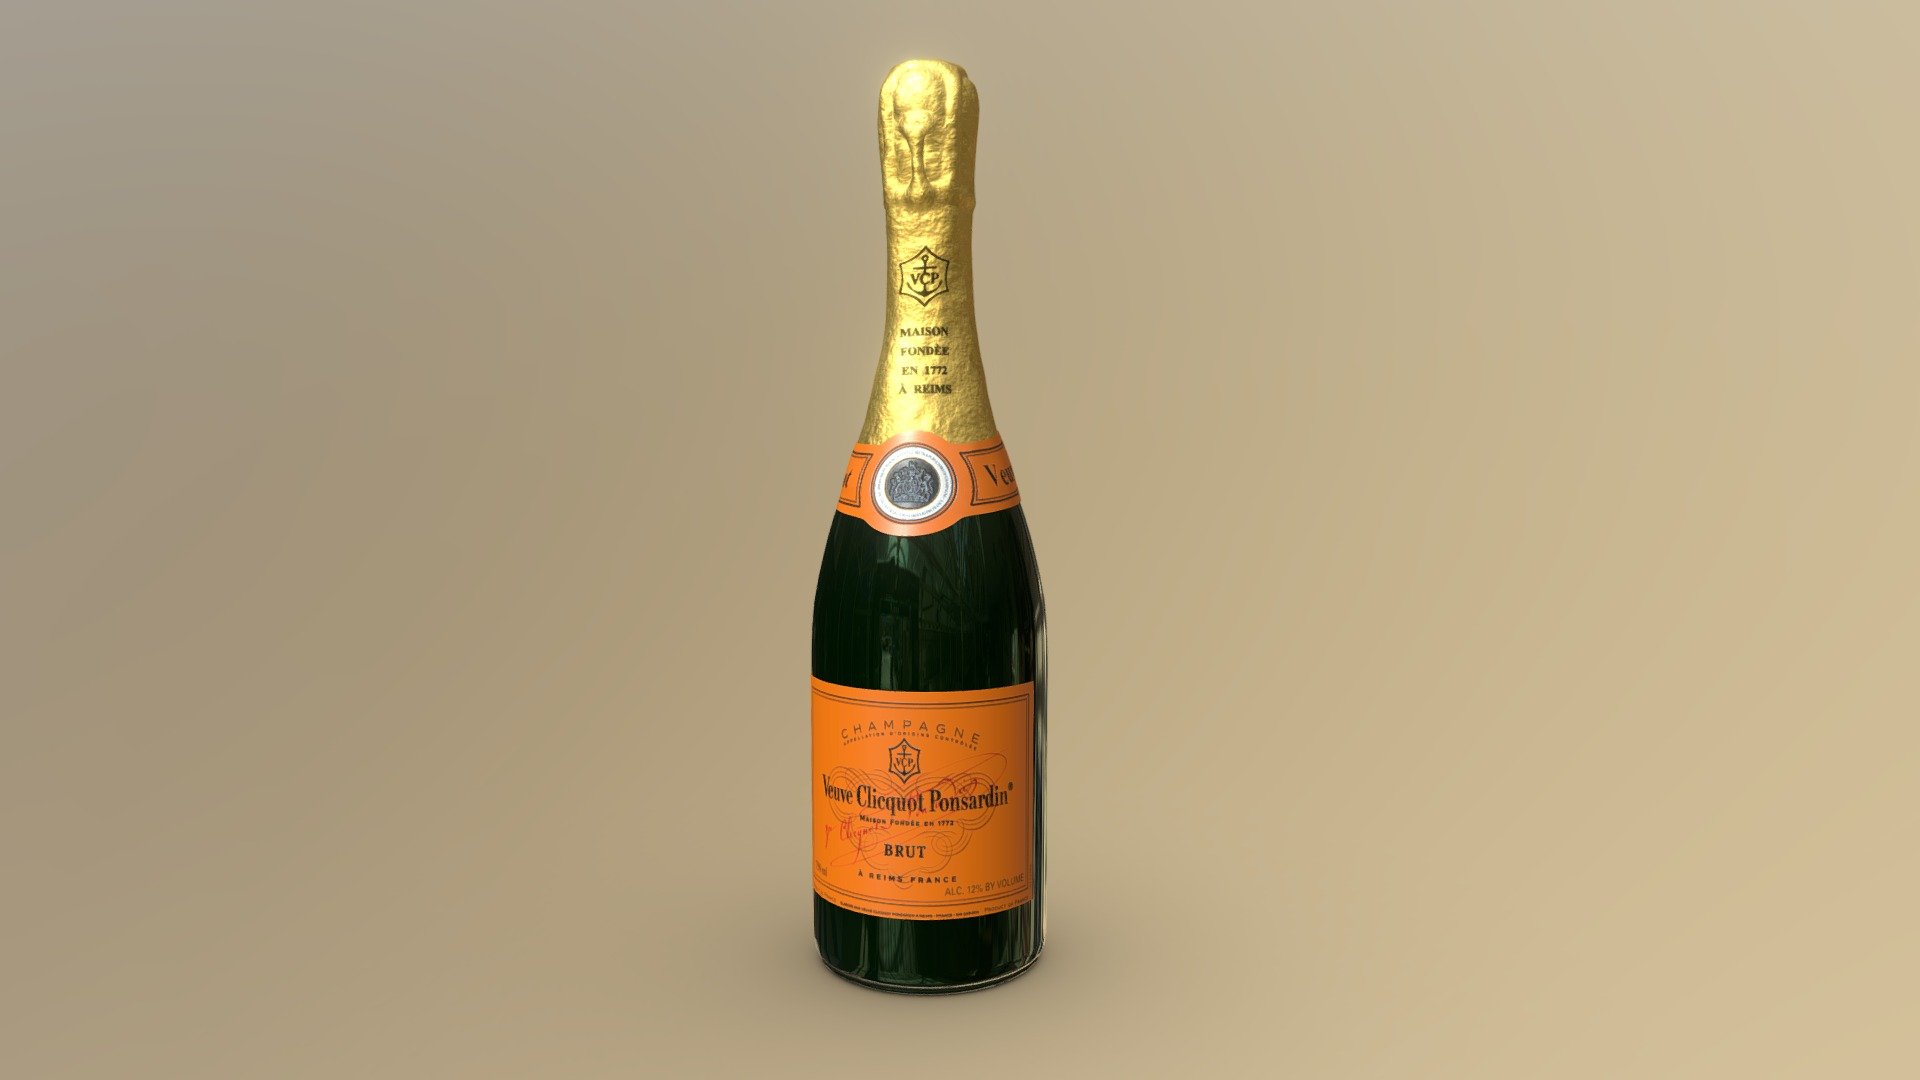 Champagne Cuvee Brut Veuve Clicquot Ponsardin

Champagne Veuve Clicquot Ponsardin Brut. La maison Veuve Clicquot è una delle più importanti case produttrici di Champagne. La sua storia ebbe inizio nel 1772, quando Philippe Clicquot inaugurò un’attività vinicola a Reims 3d model